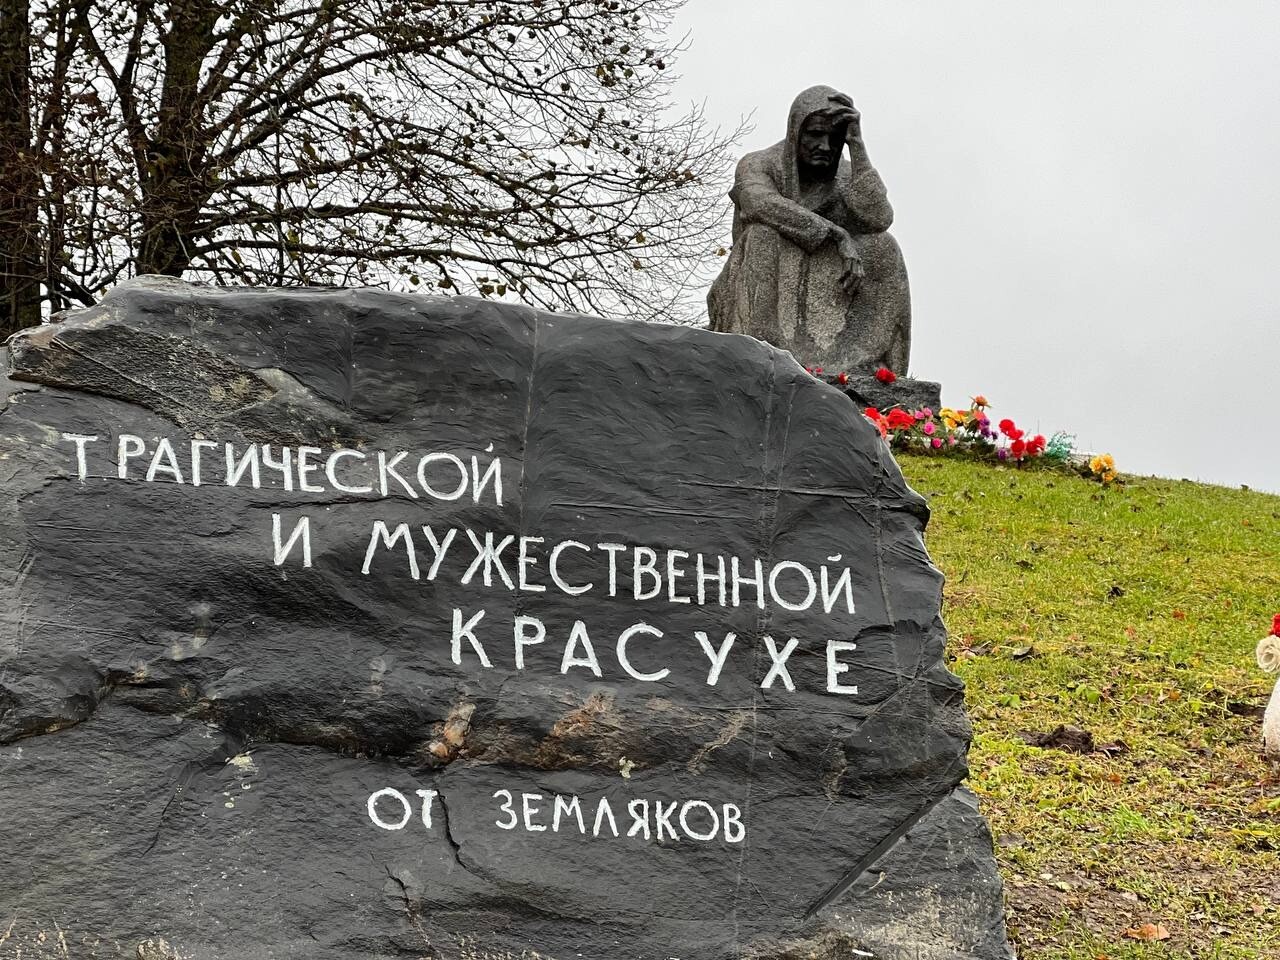 Псковские власти создадут мемориальный комплекс в сожжённой деревне Красуха